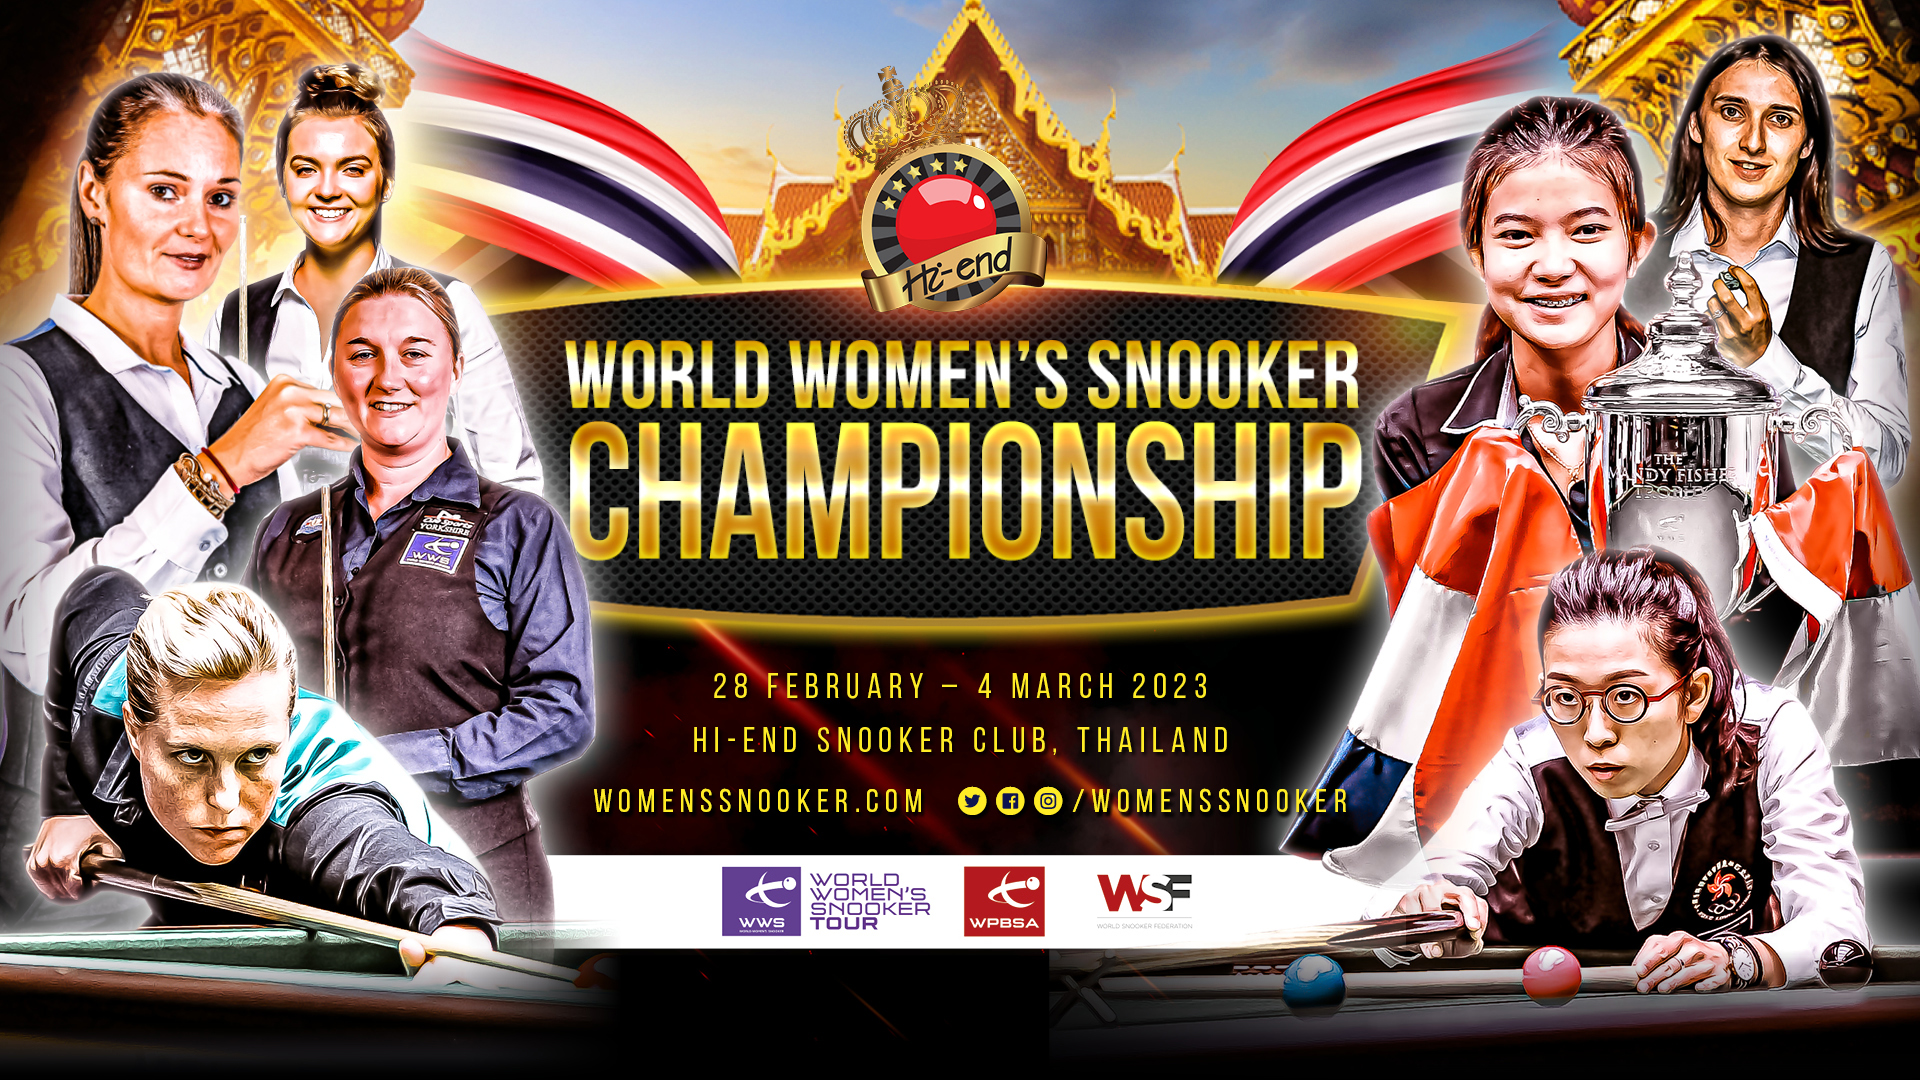 World Women’s Snooker Championship 2023 Enter Now World Women's Snooker